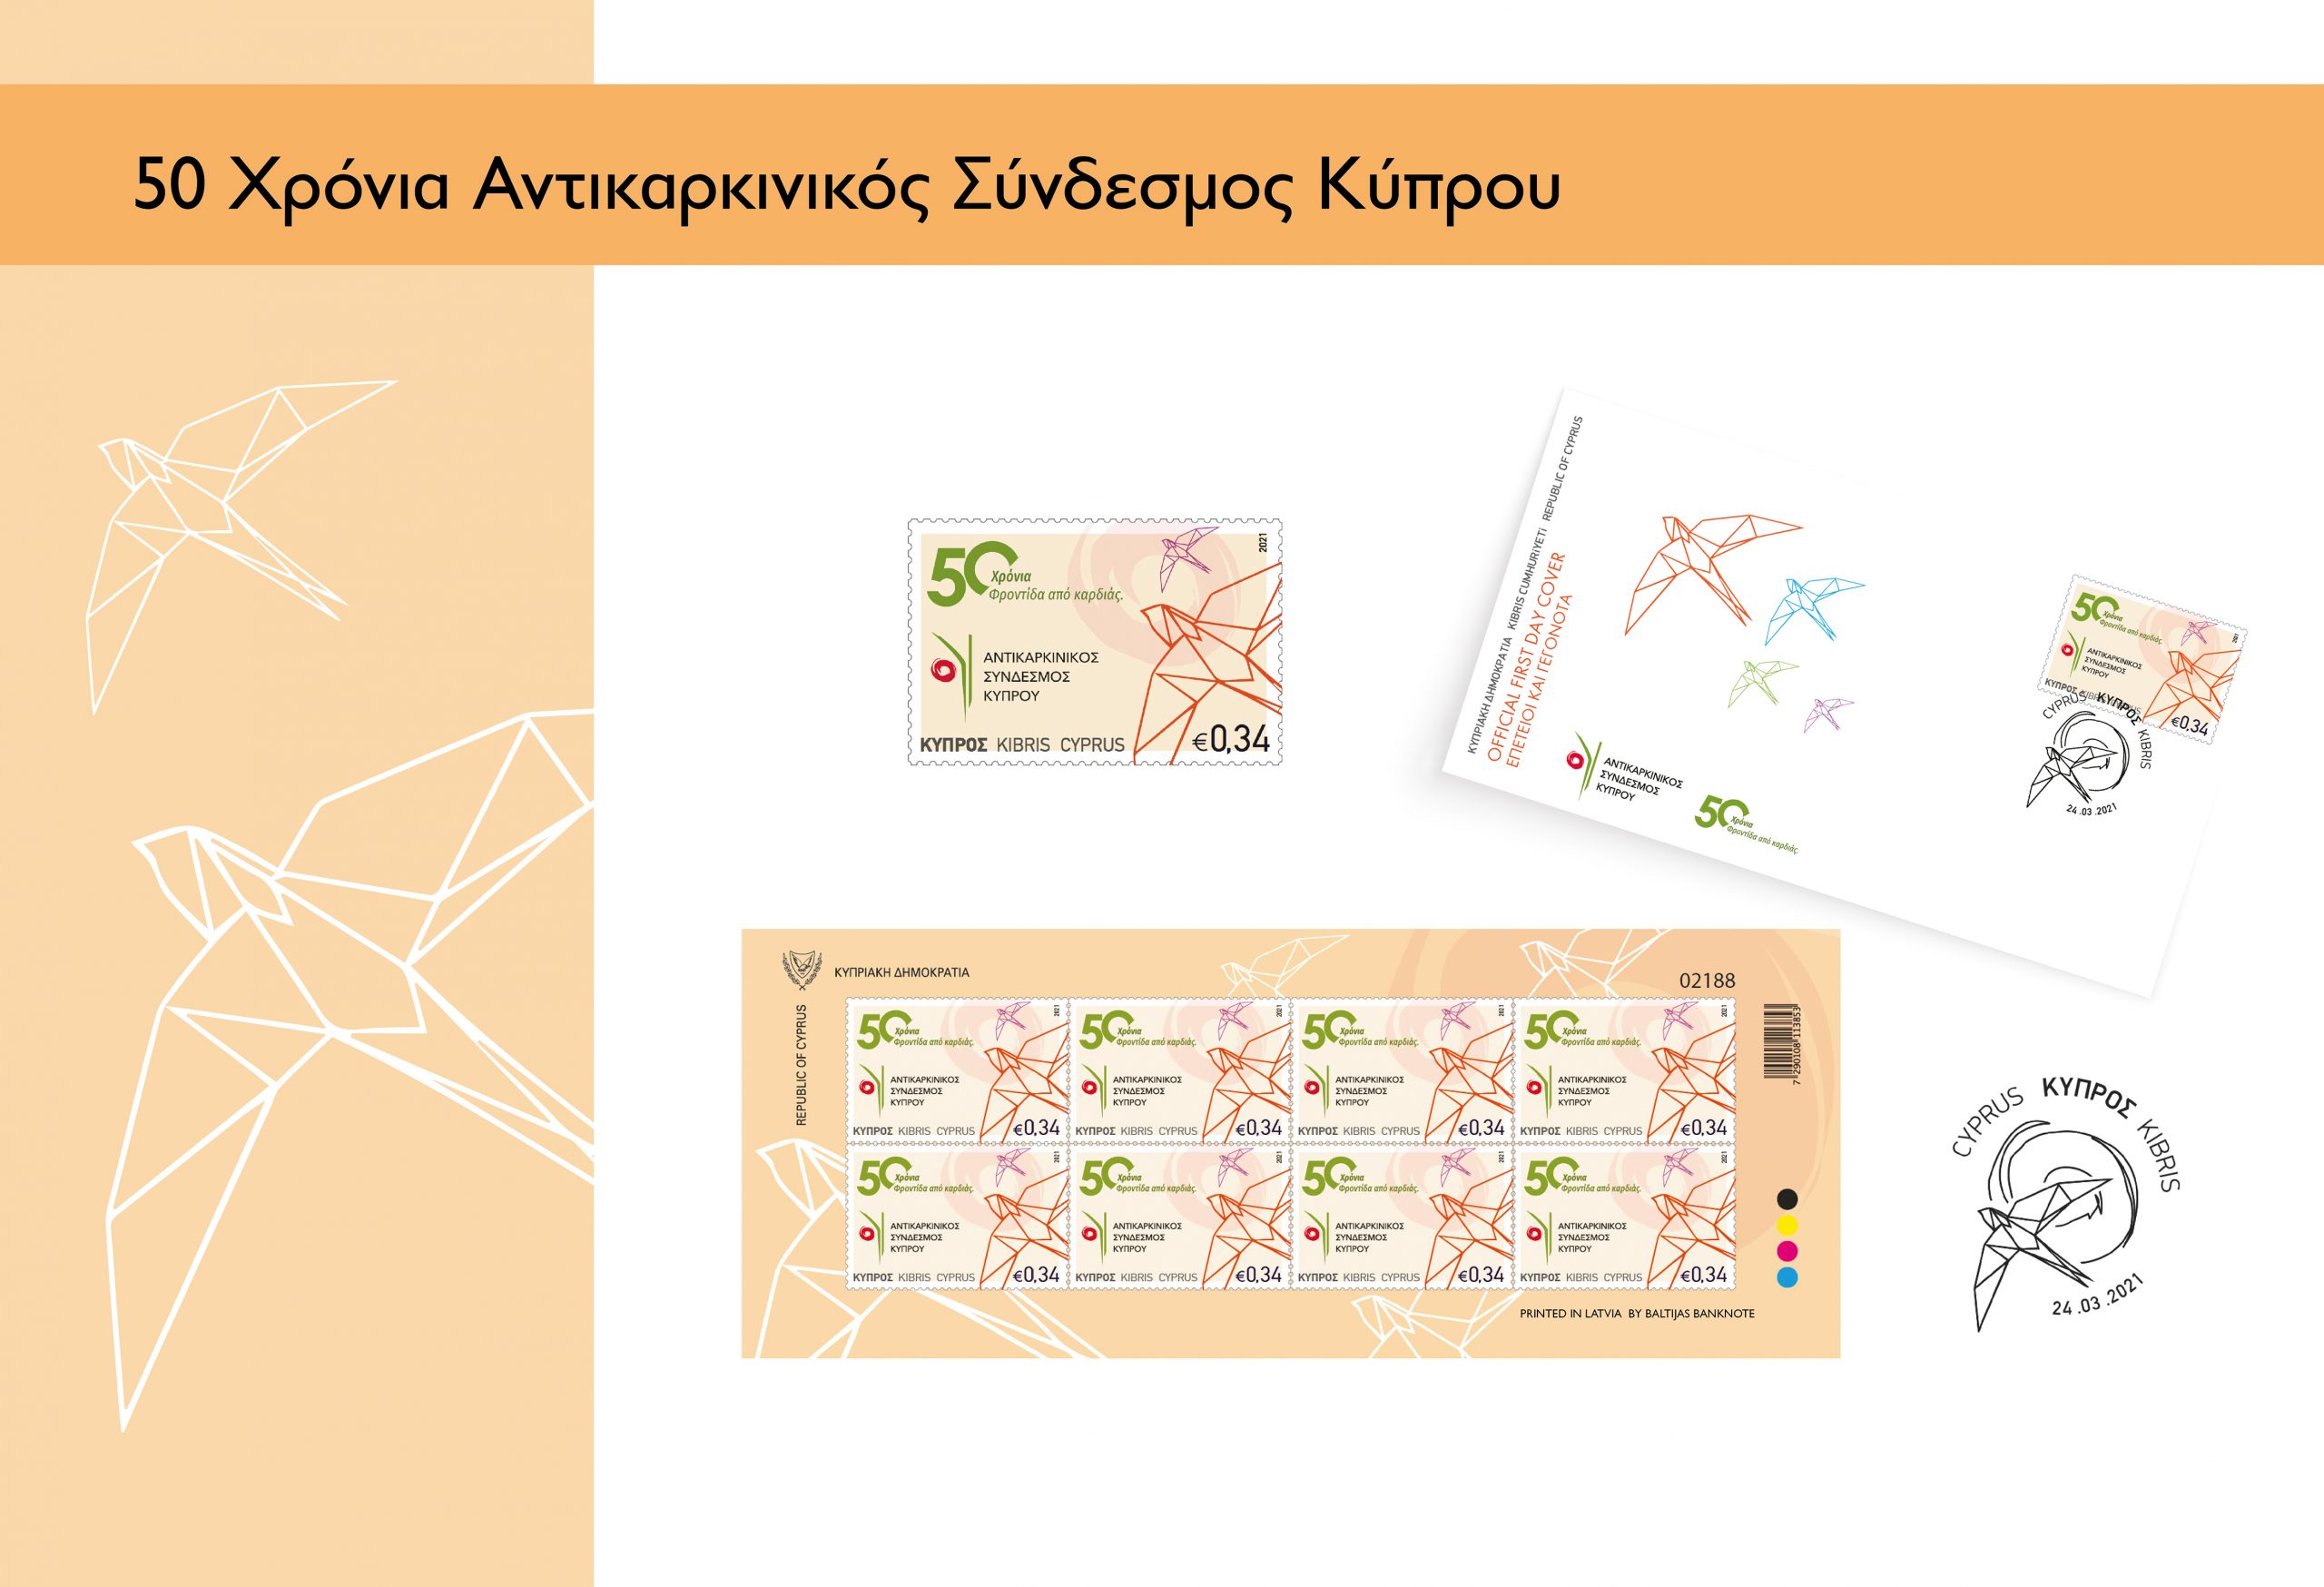 Επετειακό γραμματόσημο για τα  50 χρόνια Αντικαρκινικού Συνδέσμου Κύπρου